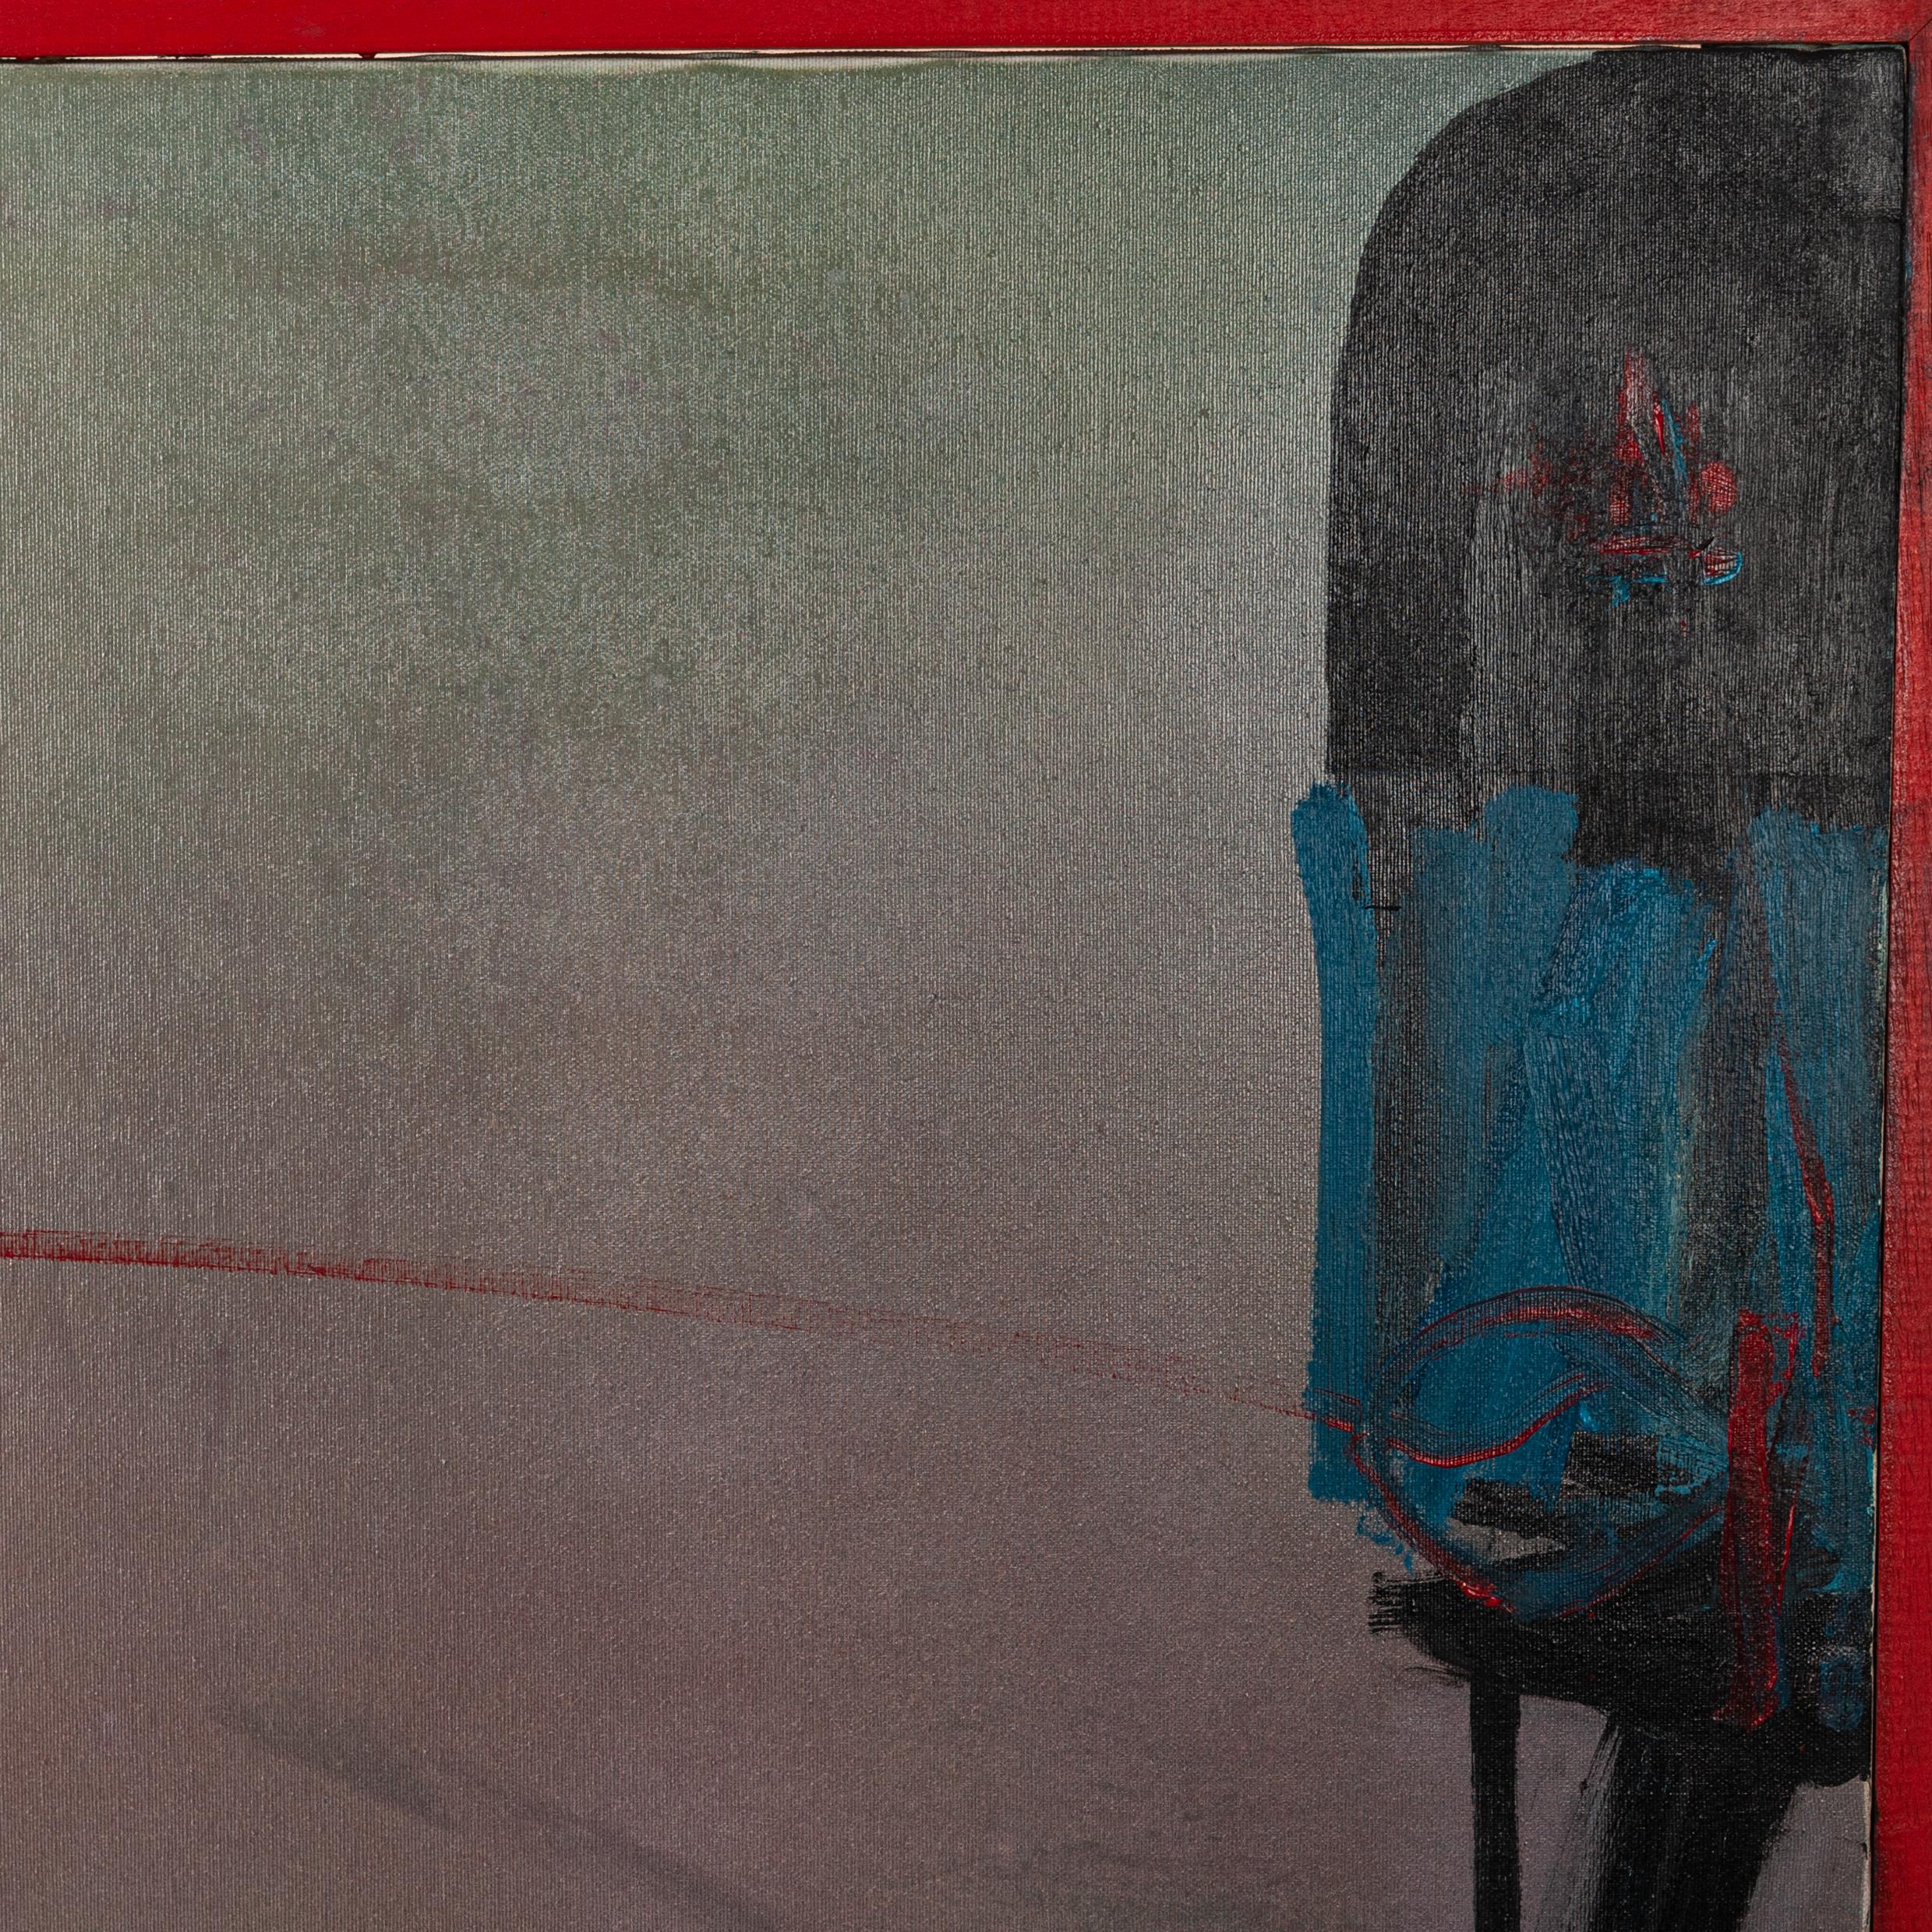 Fantastisches großes abstraktes informelles Gemälde mit einer poetischen Note in wunderbaren Farben, signiert Danilo Picchiotti 1987.
Der Original-Künstlerrahmen in Rot lässt die künstlerische Gestaltung in den Rahmen laufen oder integriert den